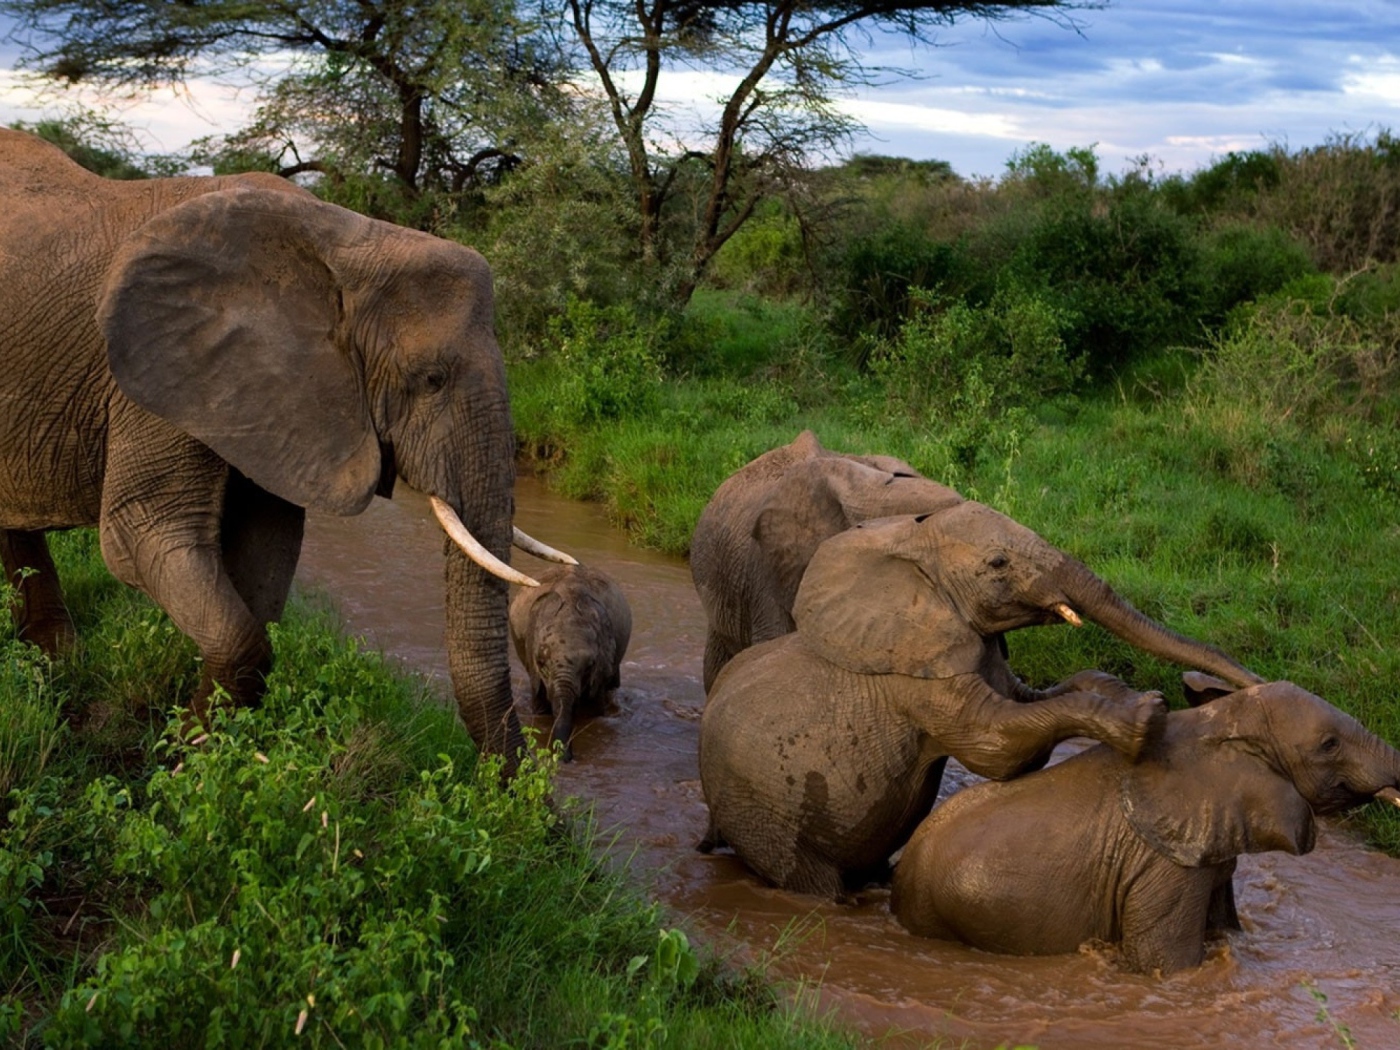 Elephants bathe